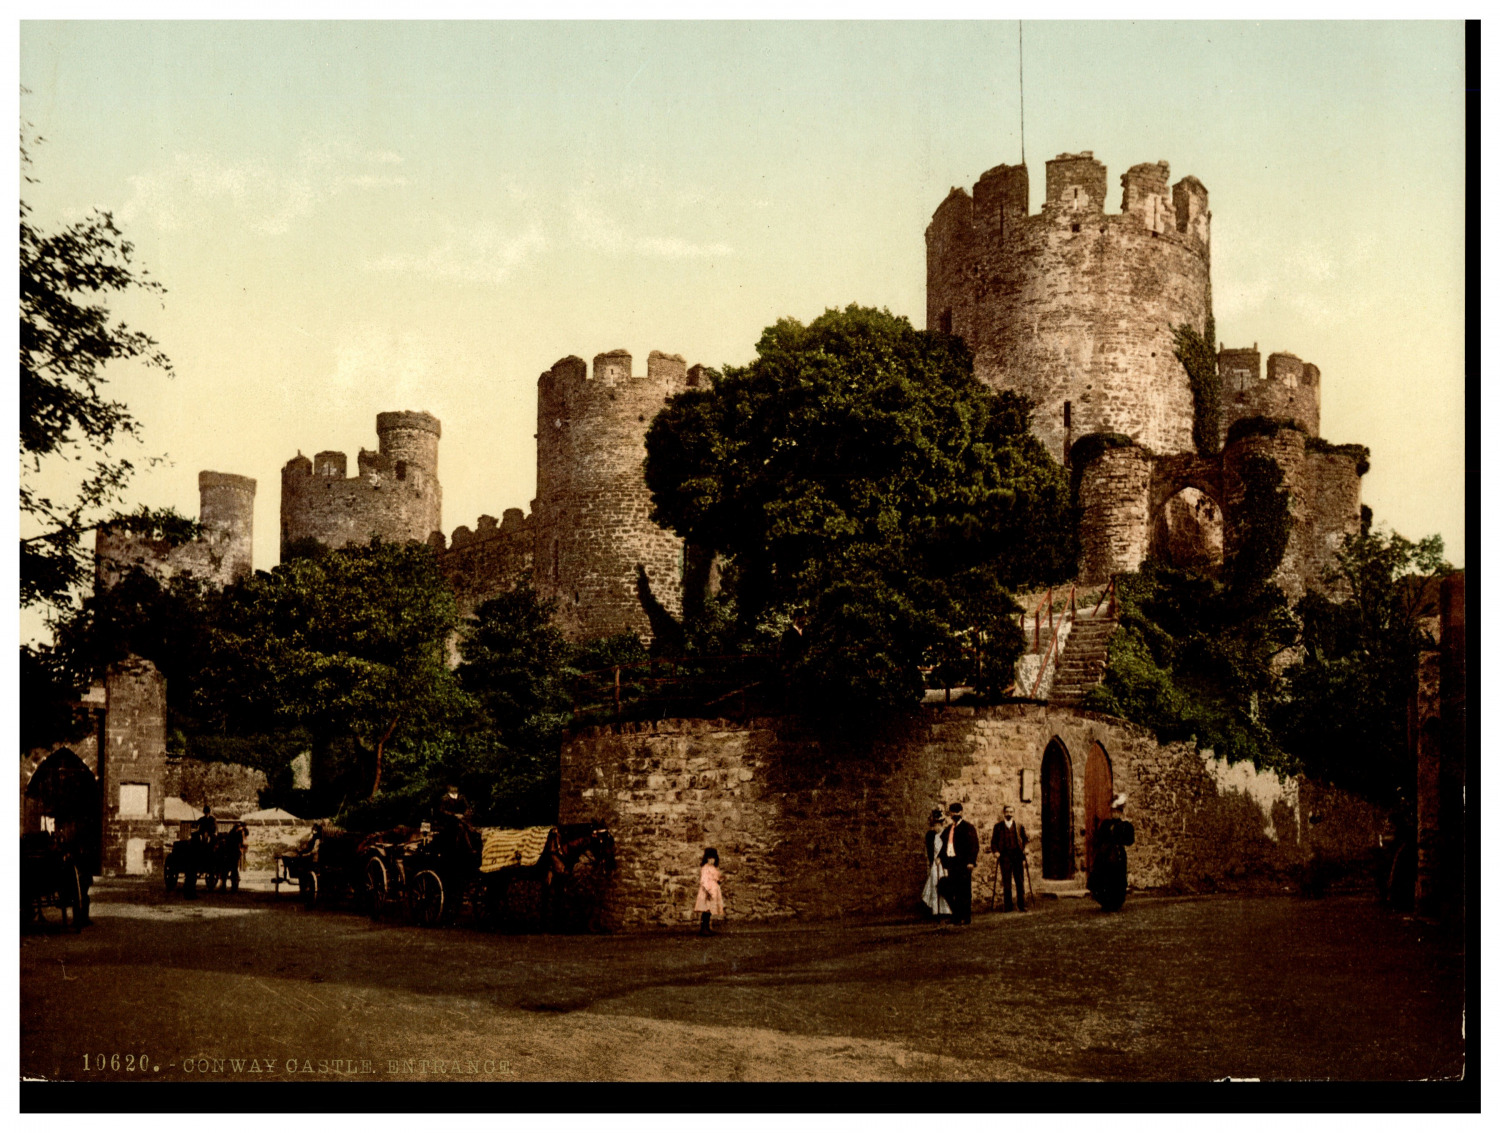 Wales, Conway, Castle entrance vintage photochrome, photochromy, vintage photo